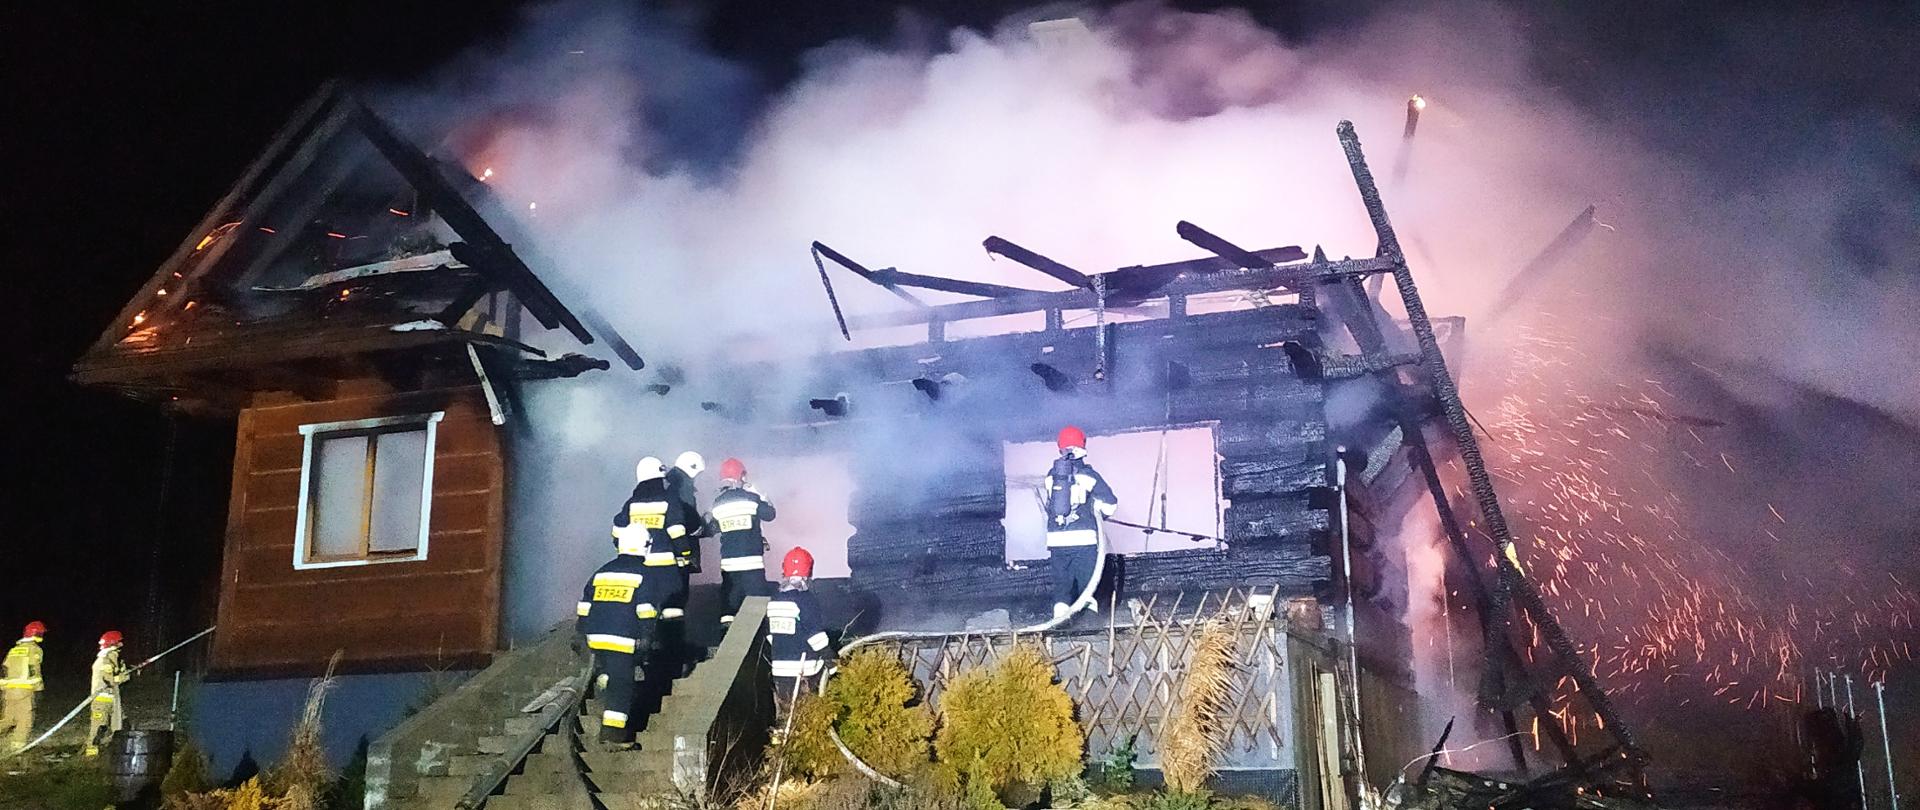 Zdjęcie przedstawia budynek objęty w całości ogniem. Wokół domu
widnieje żółta poświata. Na tle płomieni można zauważyć resztki więźby
dachowej. Widać również strażaków gaszących pożar.
